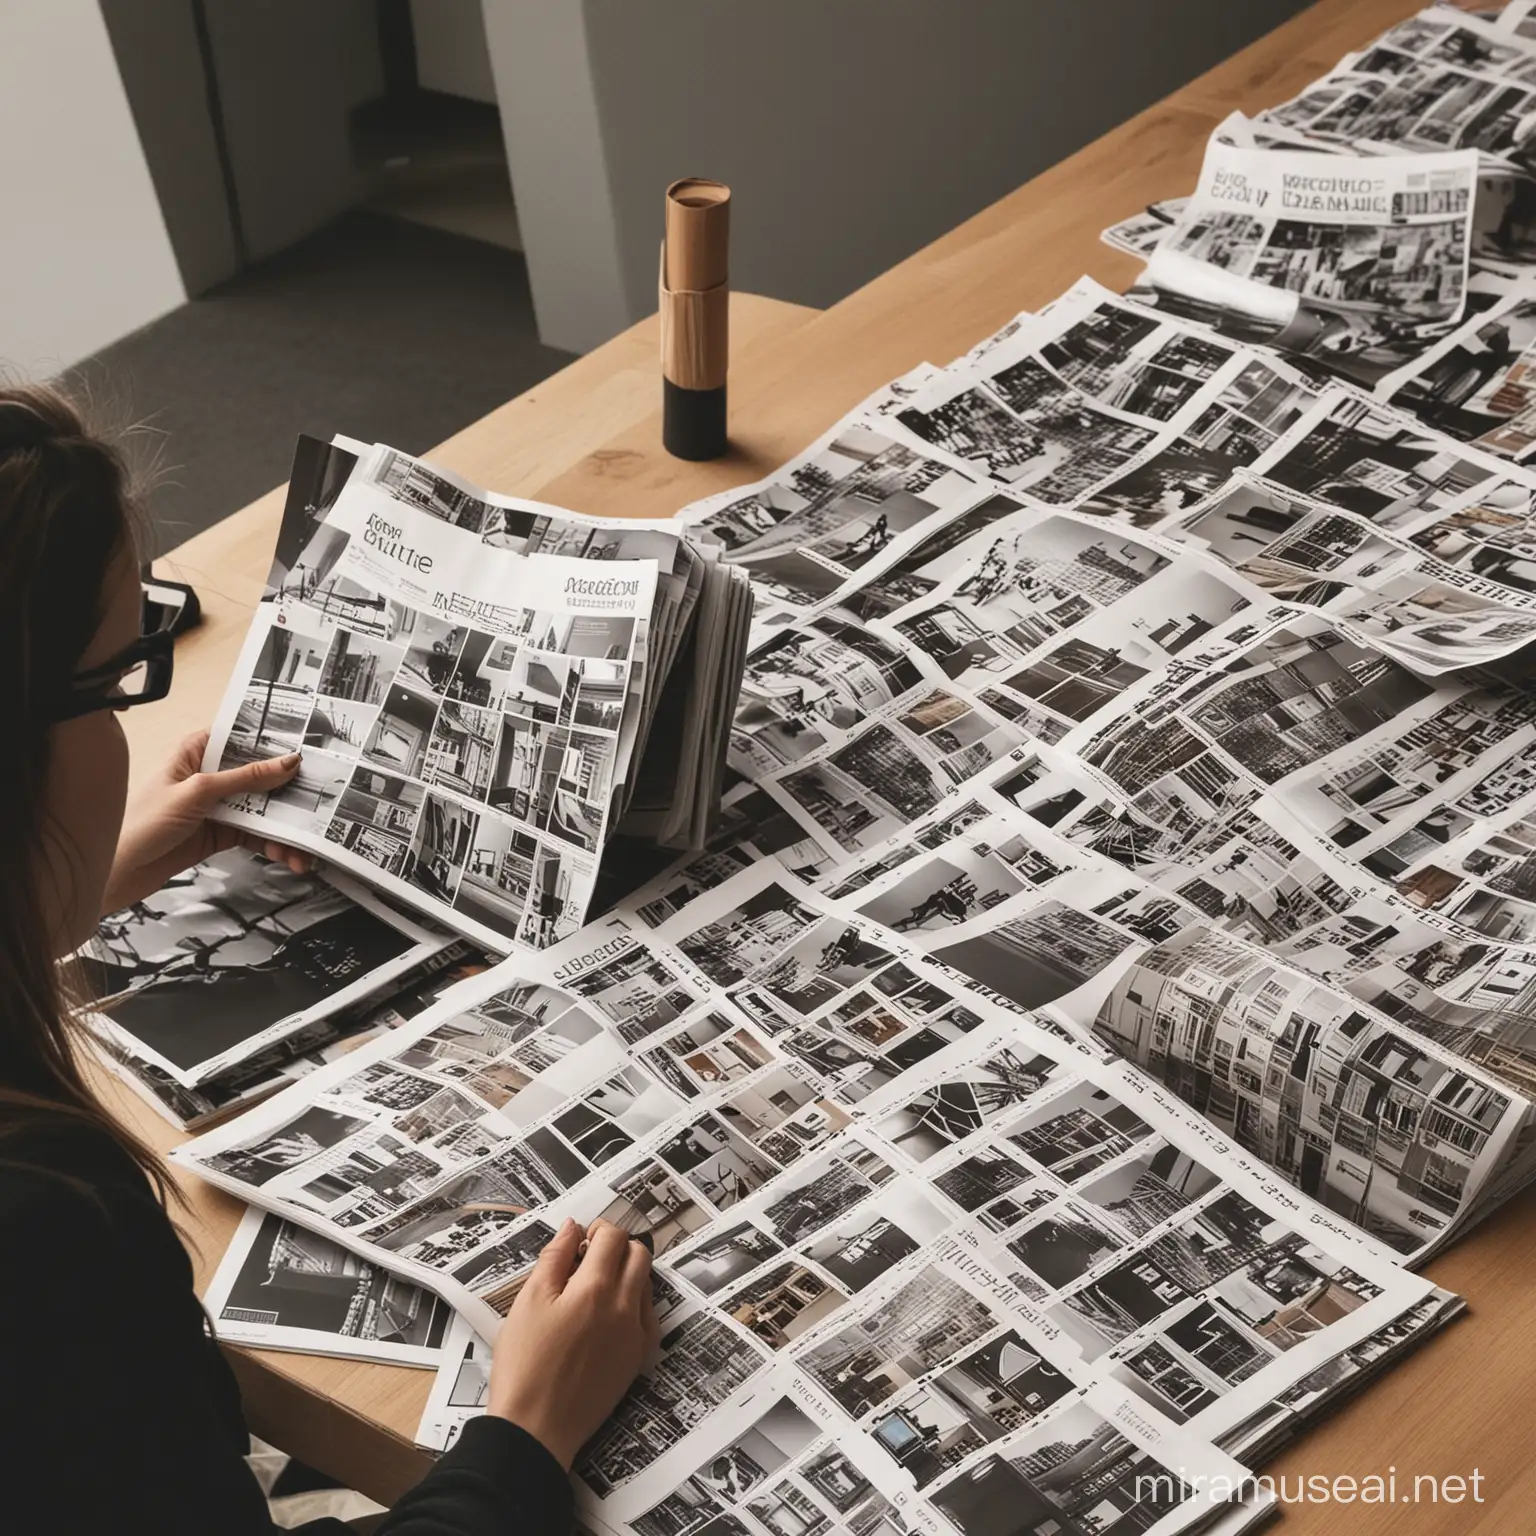 Imágenes de personas buscando observando revistas de diseño arquitectonico
